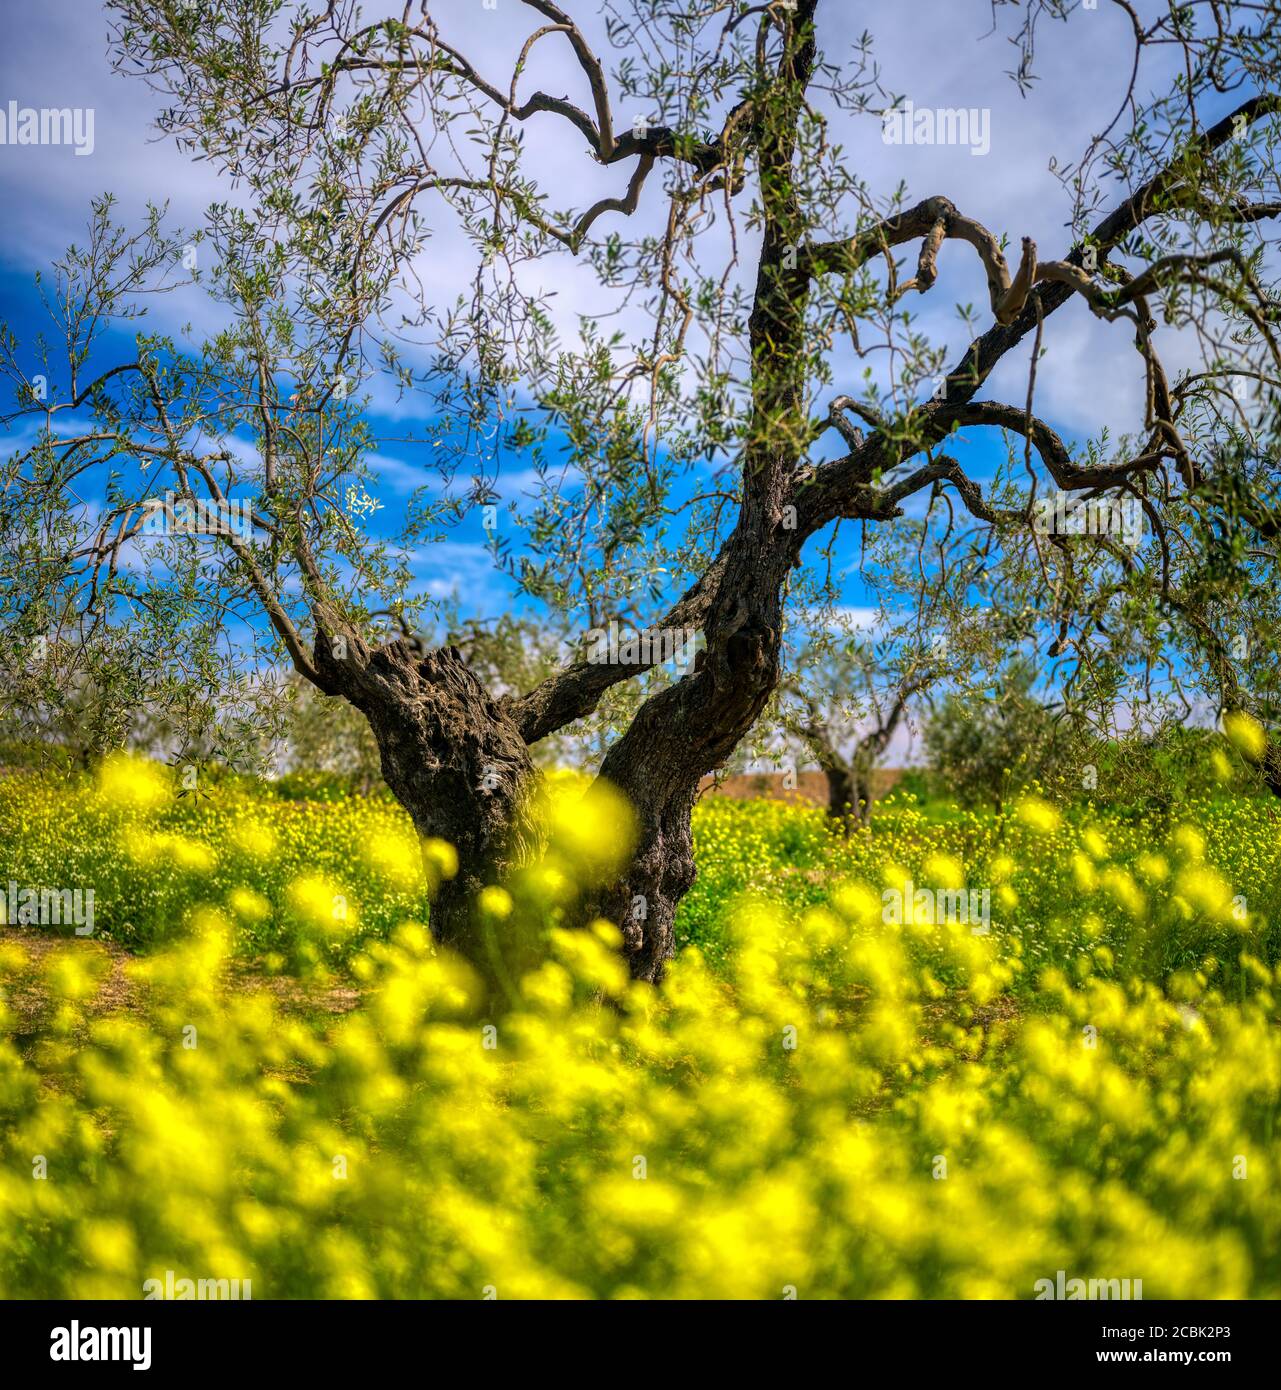 Olive grove in springtime, Seville, Spain. Stock Photo